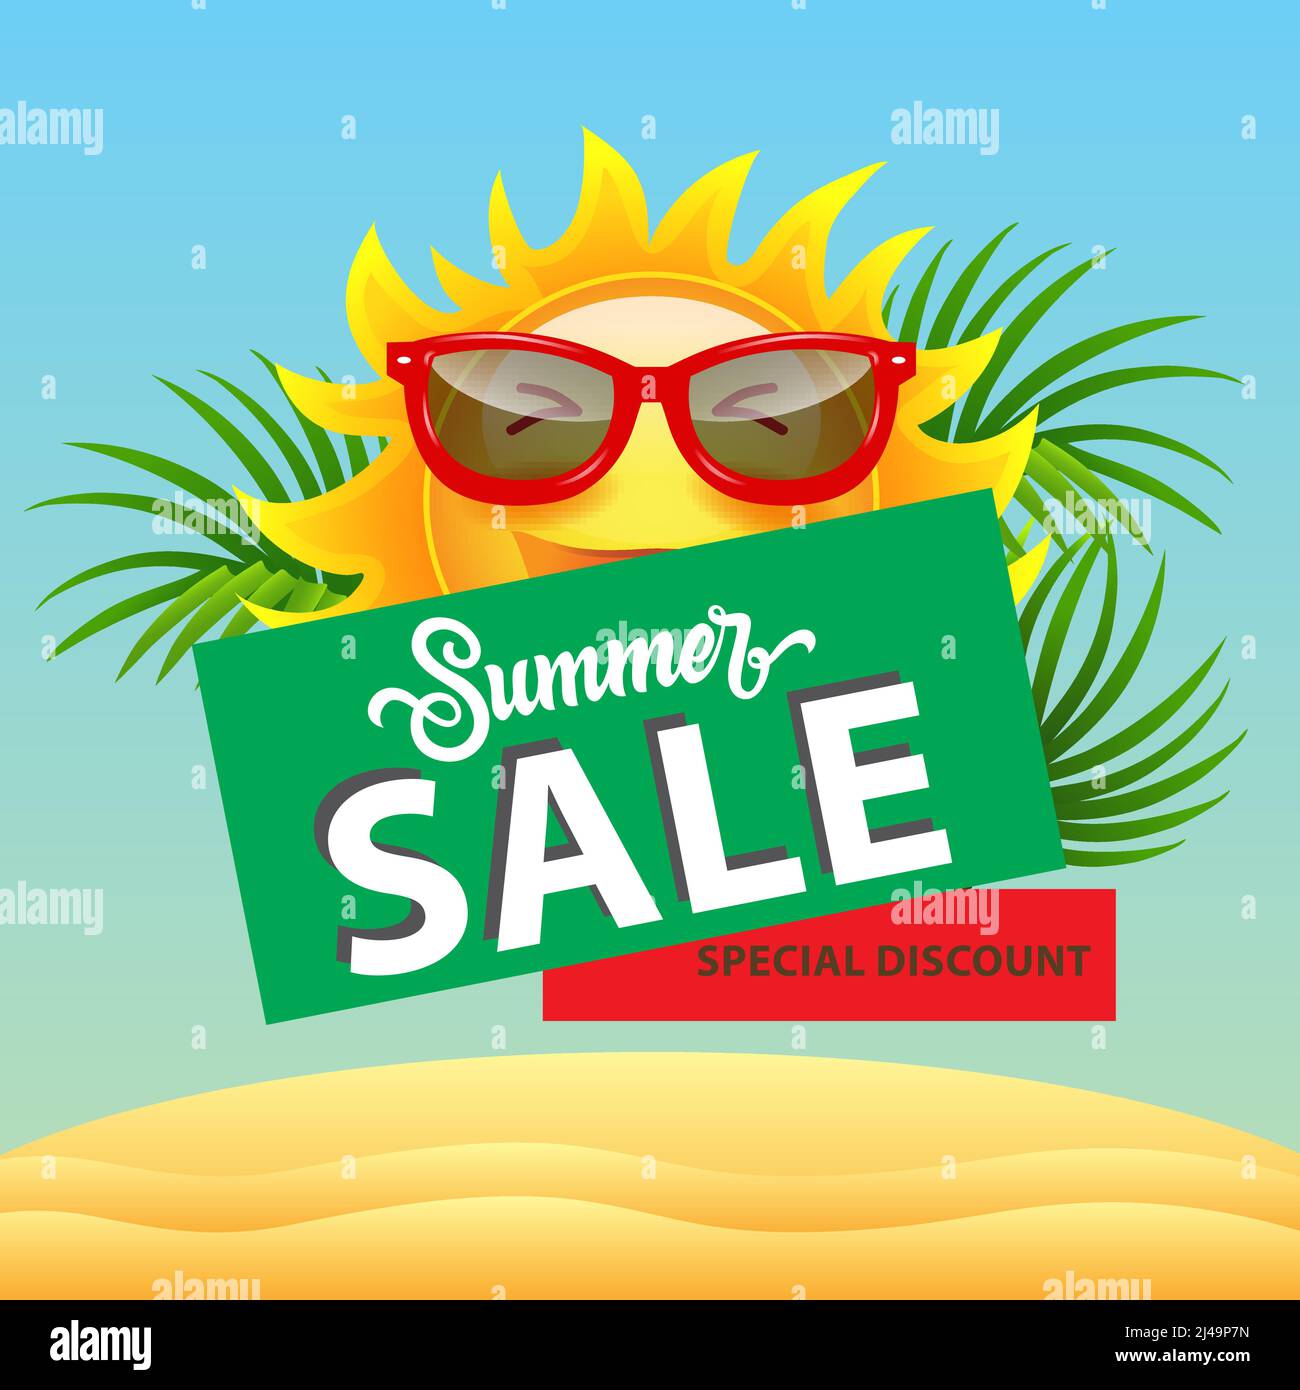 Solde d'été, affiche de réduction spéciale avec soleil de bande dessinée dans des lunettes de soleil, des feuilles de palmier et des dunes de sable. Le texte peut être utilisé pour les affiches, les étiquettes, les prospectus, les étiquettes Illustration de Vecteur